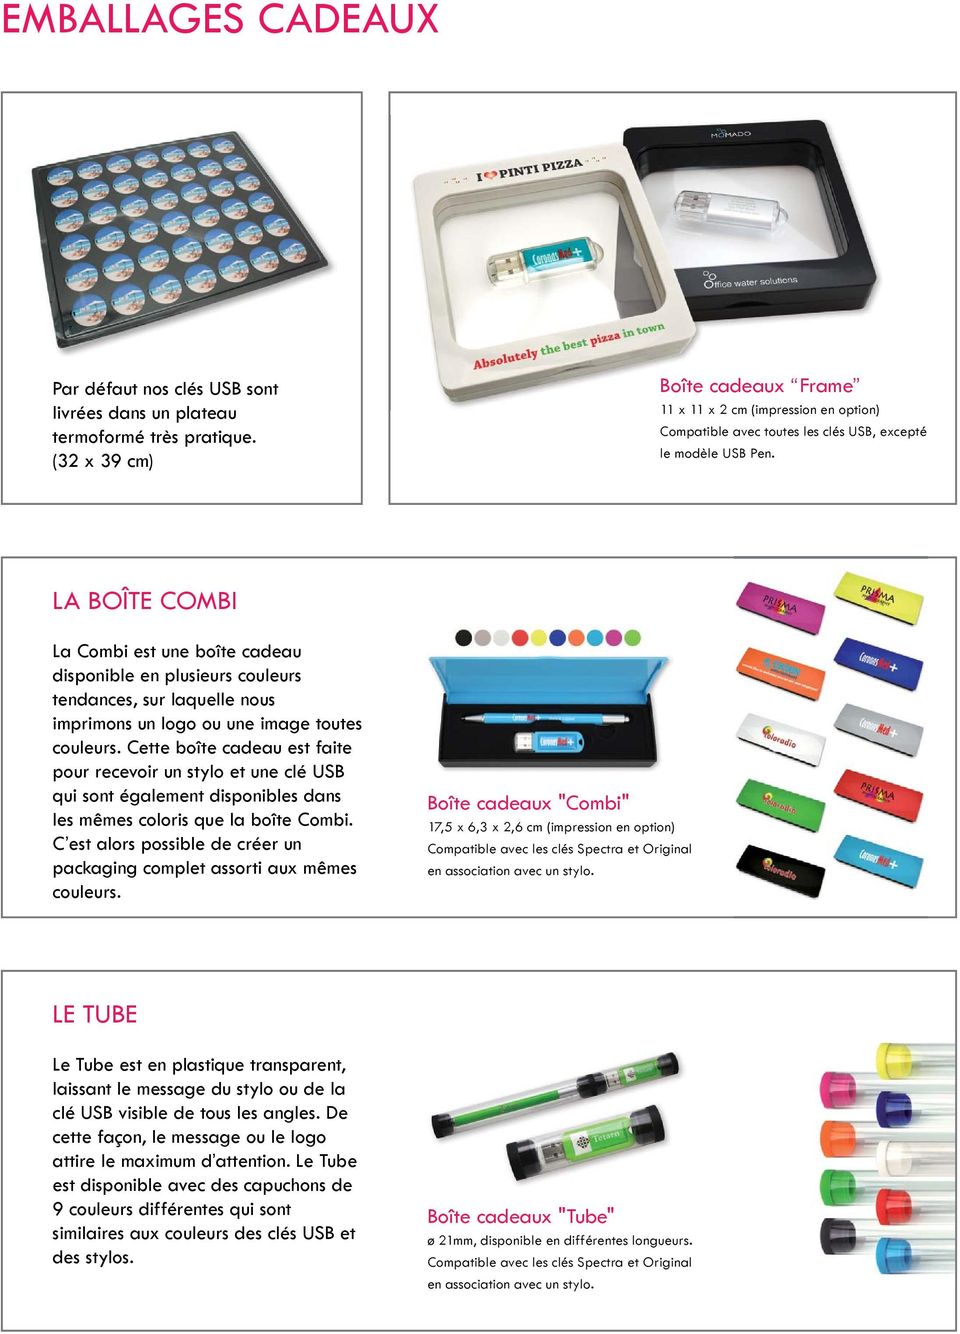 LA BOÎTE COMBI La Combi est une boîte cadeau disponible en plusieurs couleurs tendances, sur laquelle nous imprimons un logo ou une image toutes couleurs.